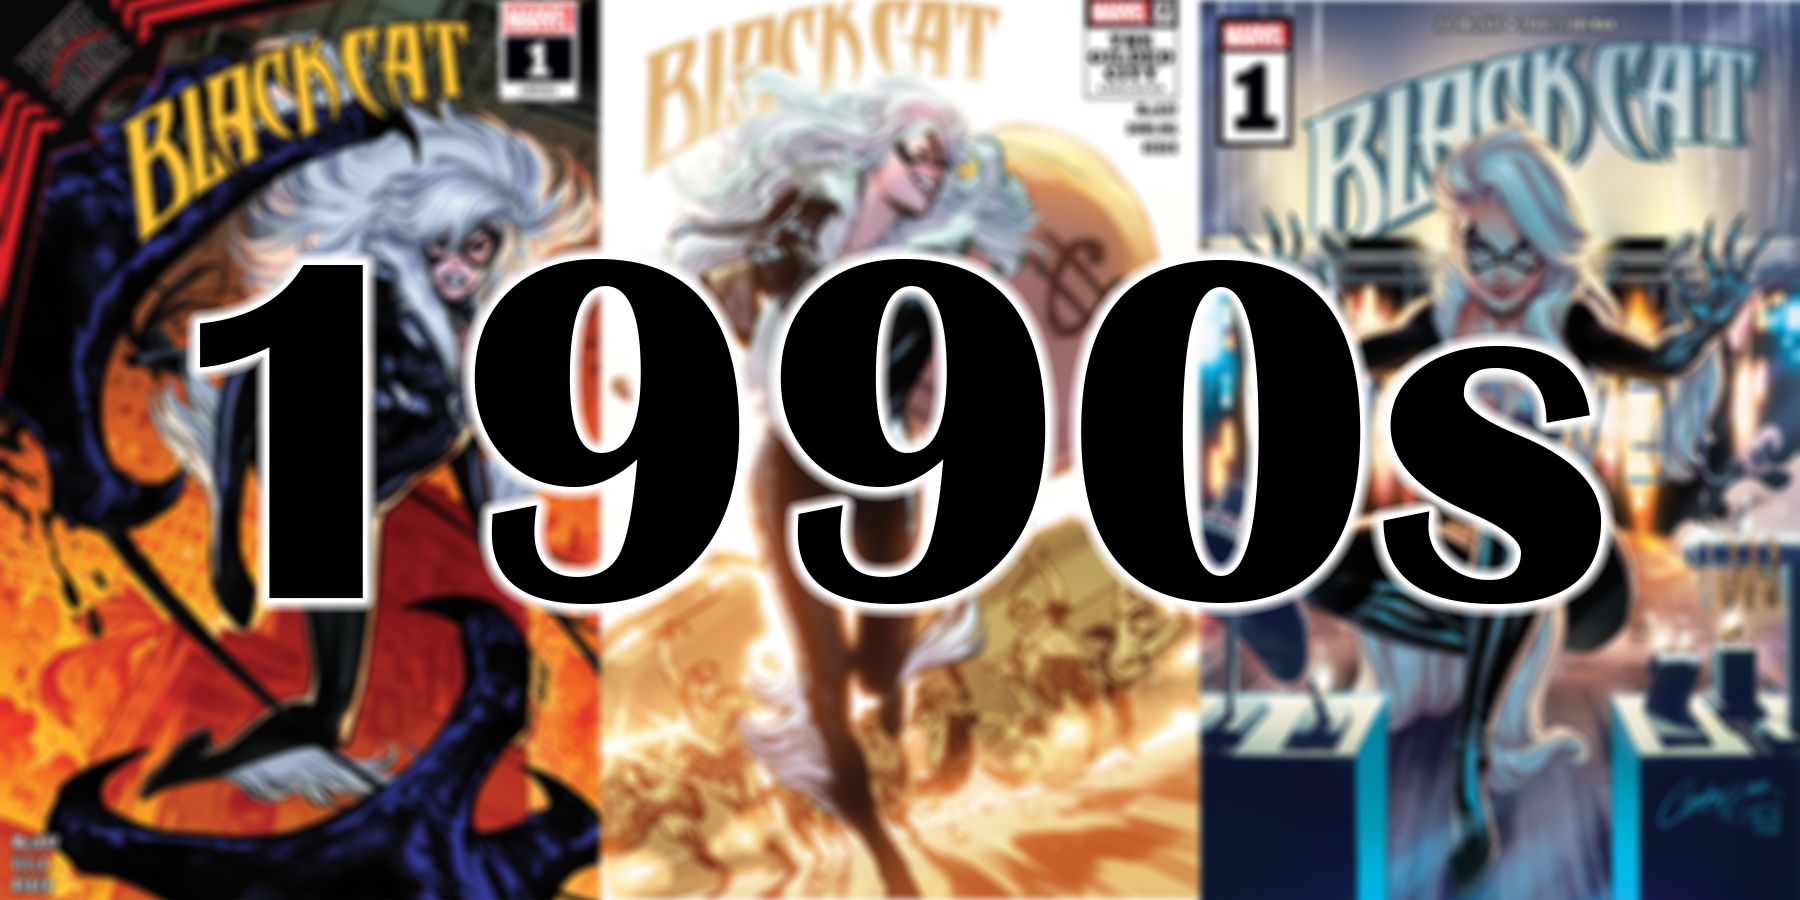 La bande dessinée Black Cat couvre Marvel des années 90